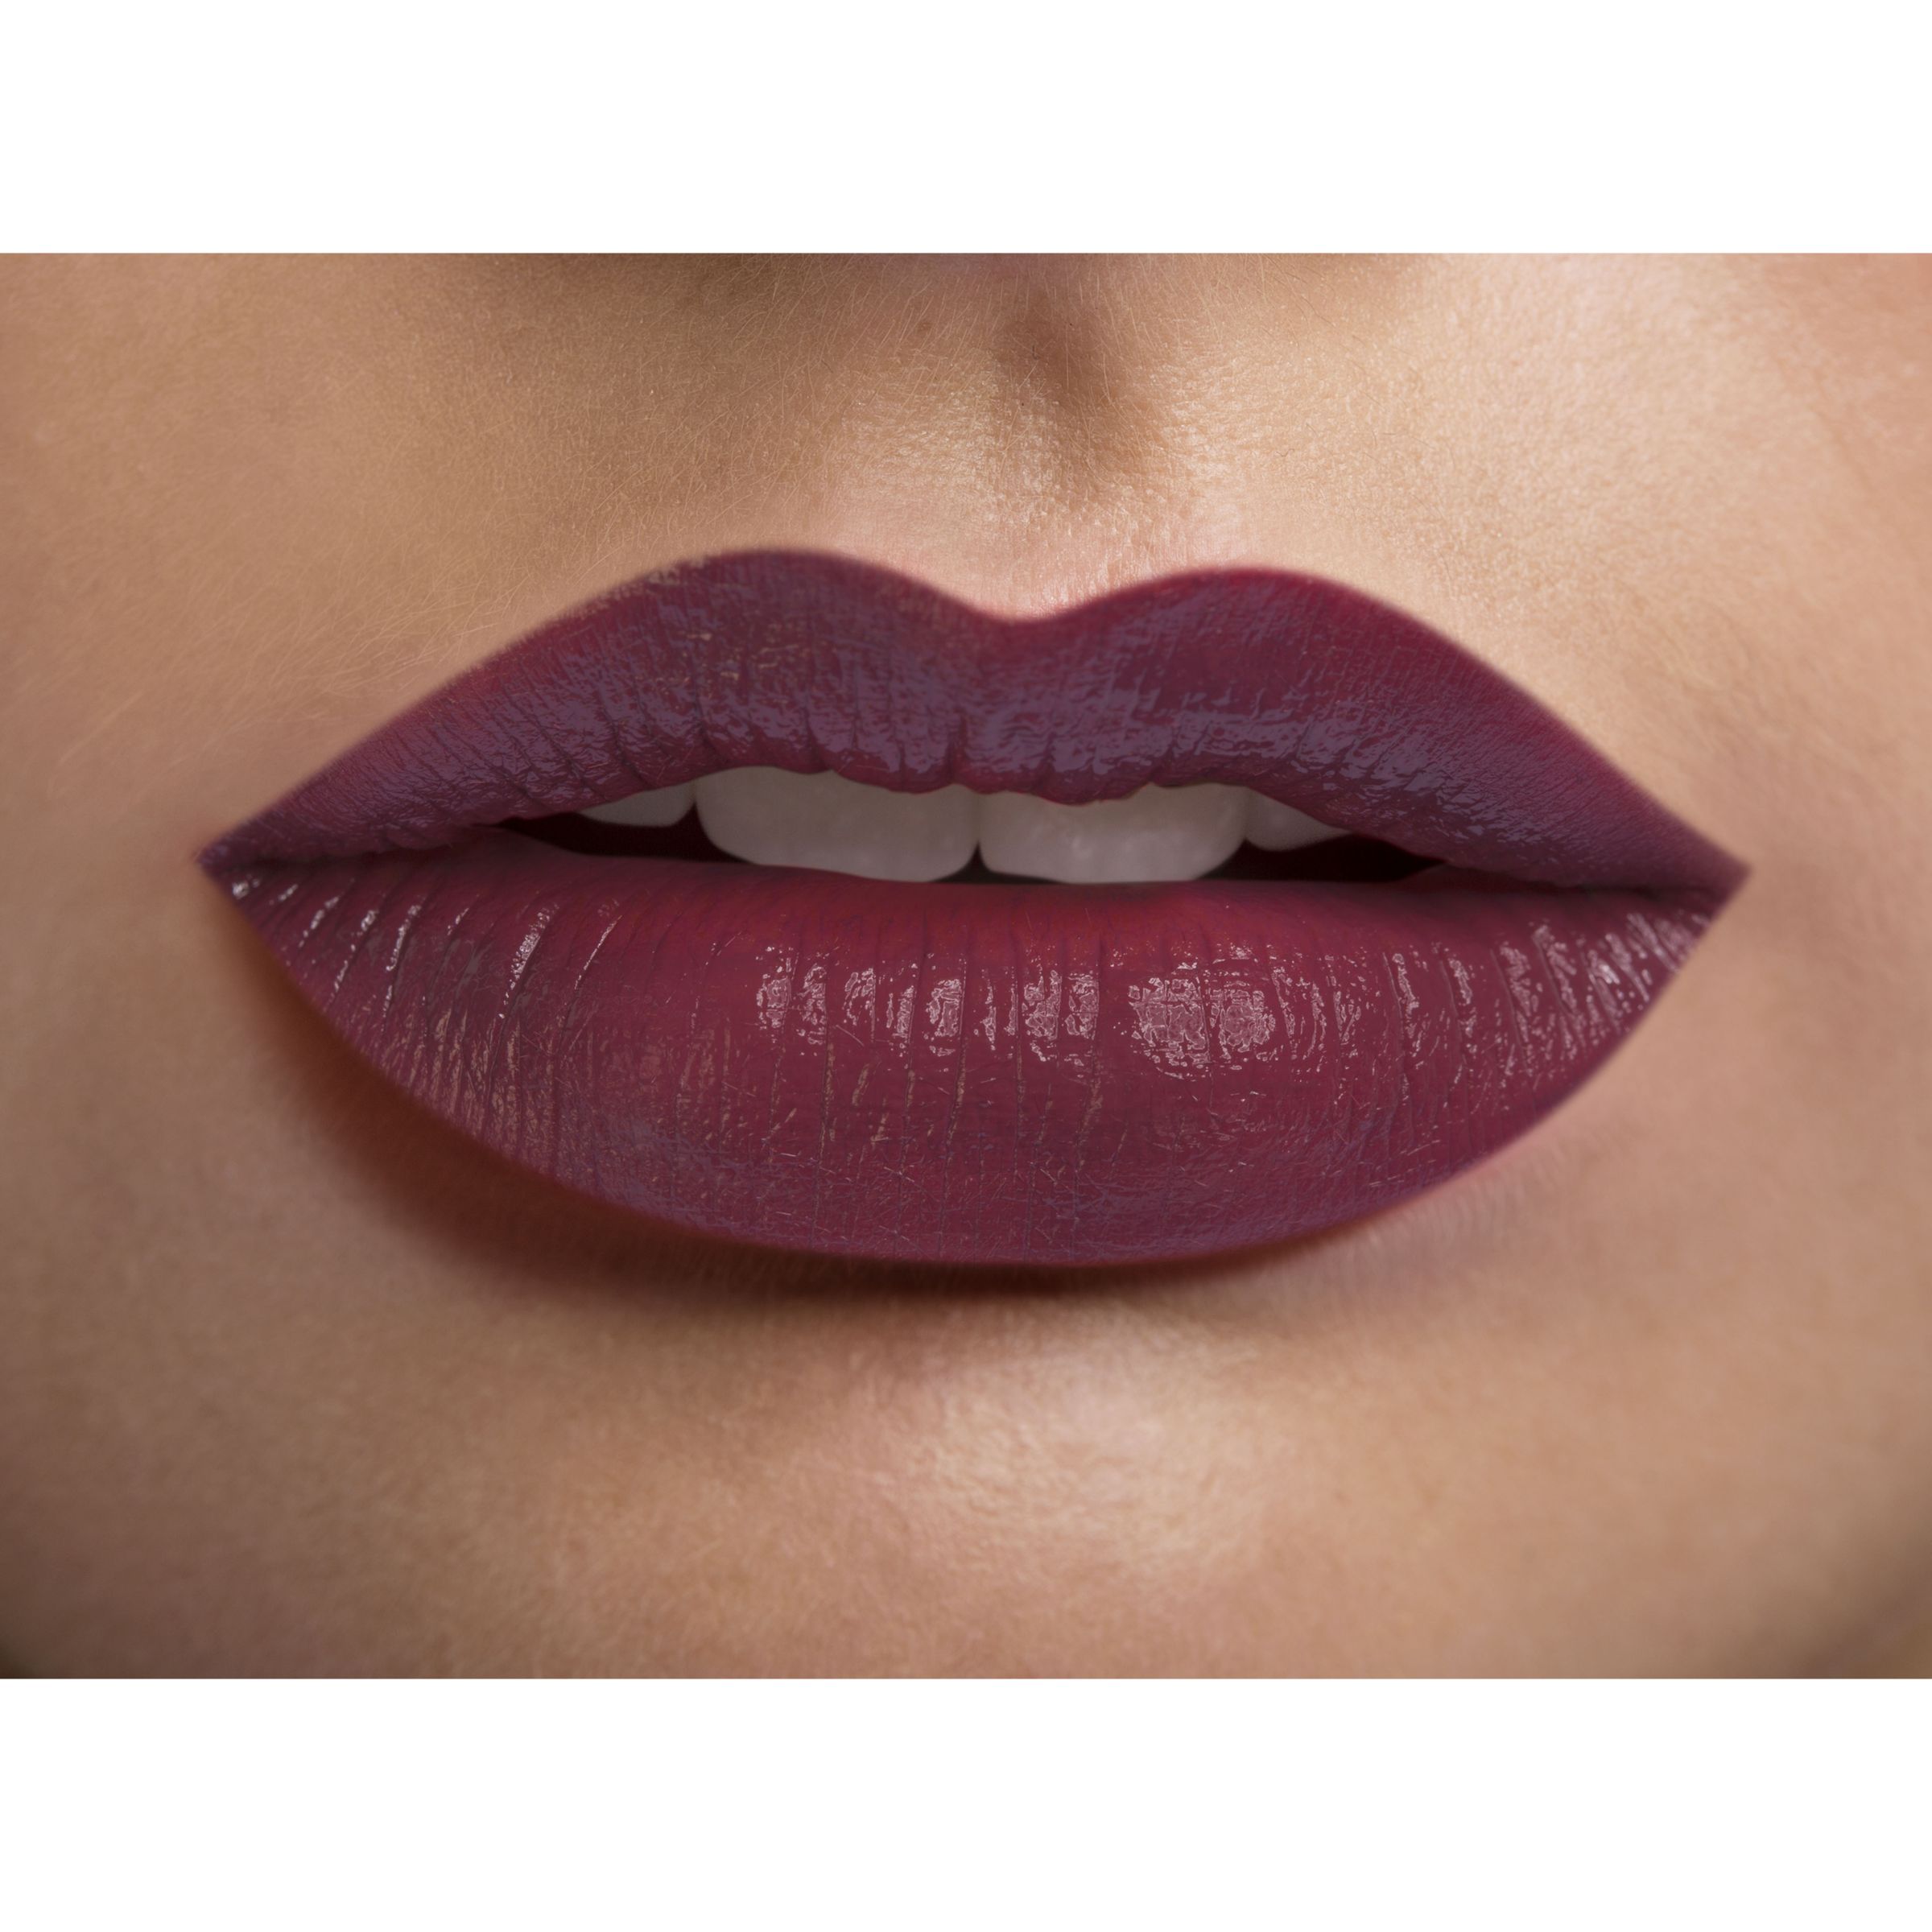 giorgio armani lipstick mulberry